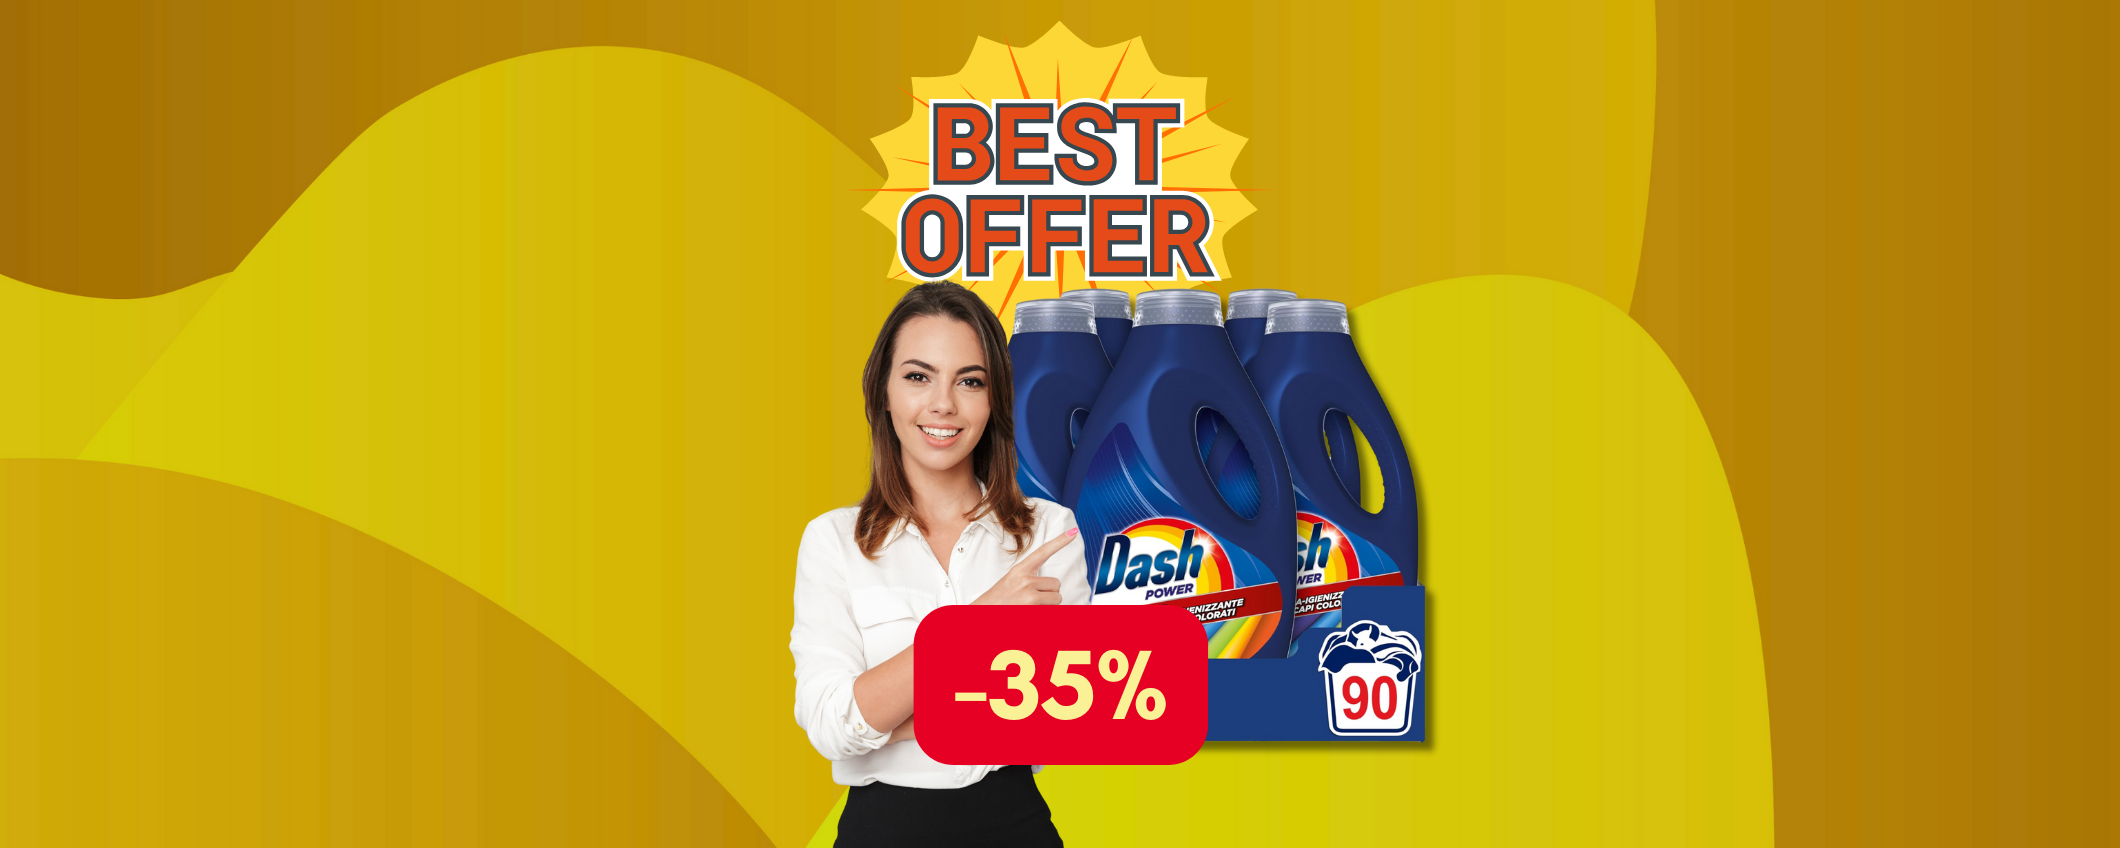 Confezione da 90 lavaggi di Dash Power in sconto del 35%